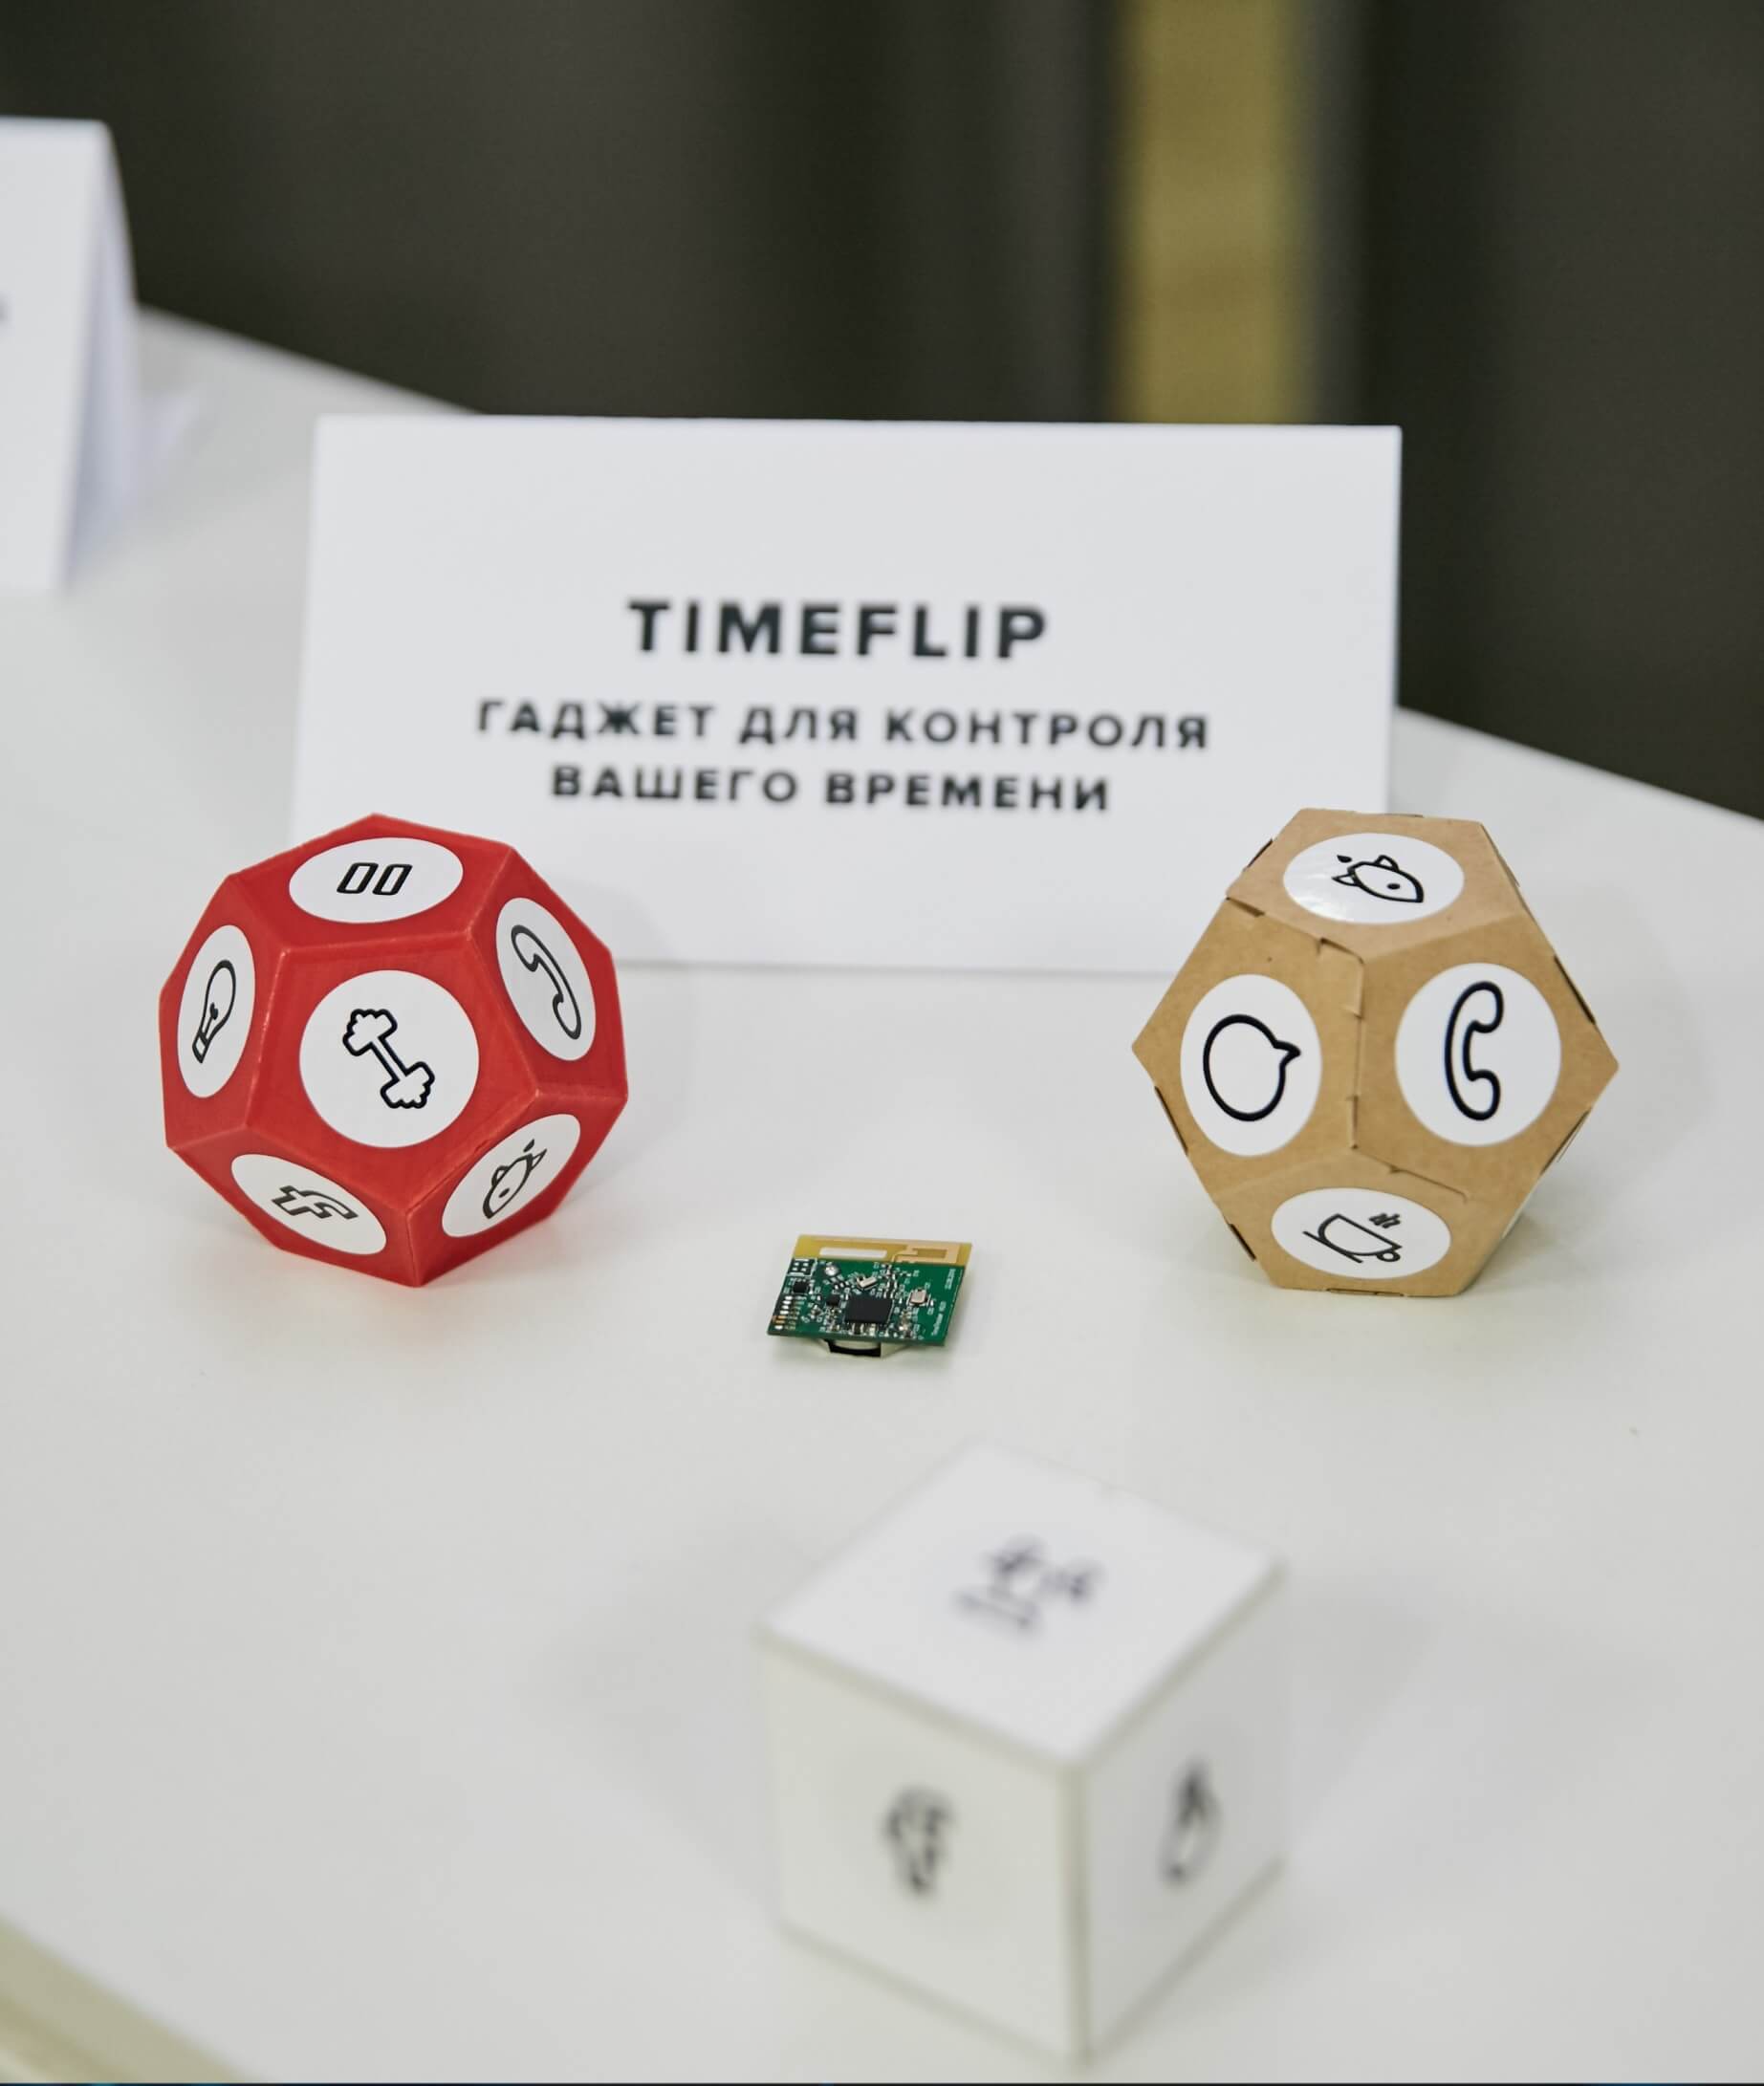 Гаджет TimeFlip позволяет контролировать учет рабочего времени и выполнение поставленных задач. Он представляет собой довольно простую конструкцию с "умной" начинкой. Фото Planeta.ru